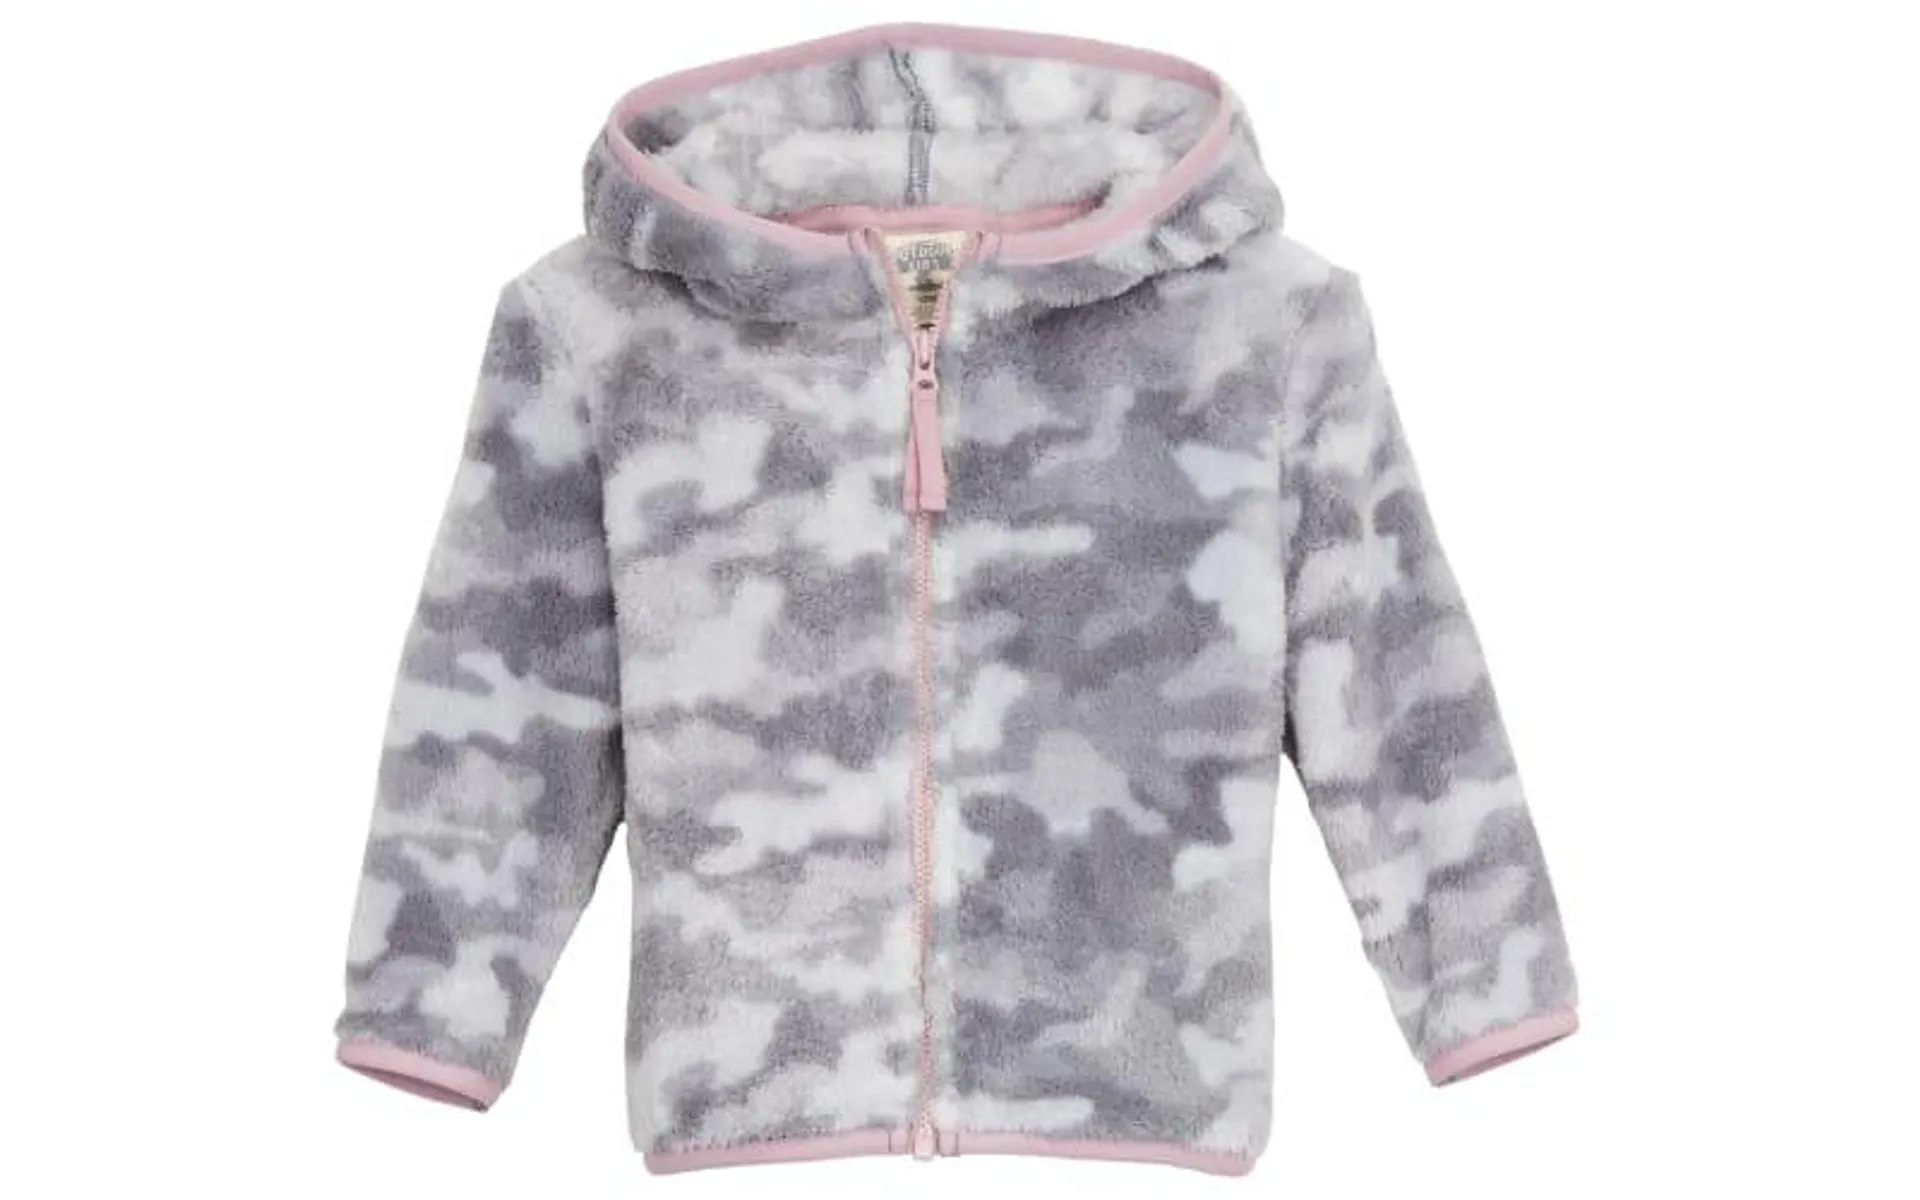 Outdoor Kids Cozy Fleece Full-Zip Long-Sleeve Hoodie for Babies